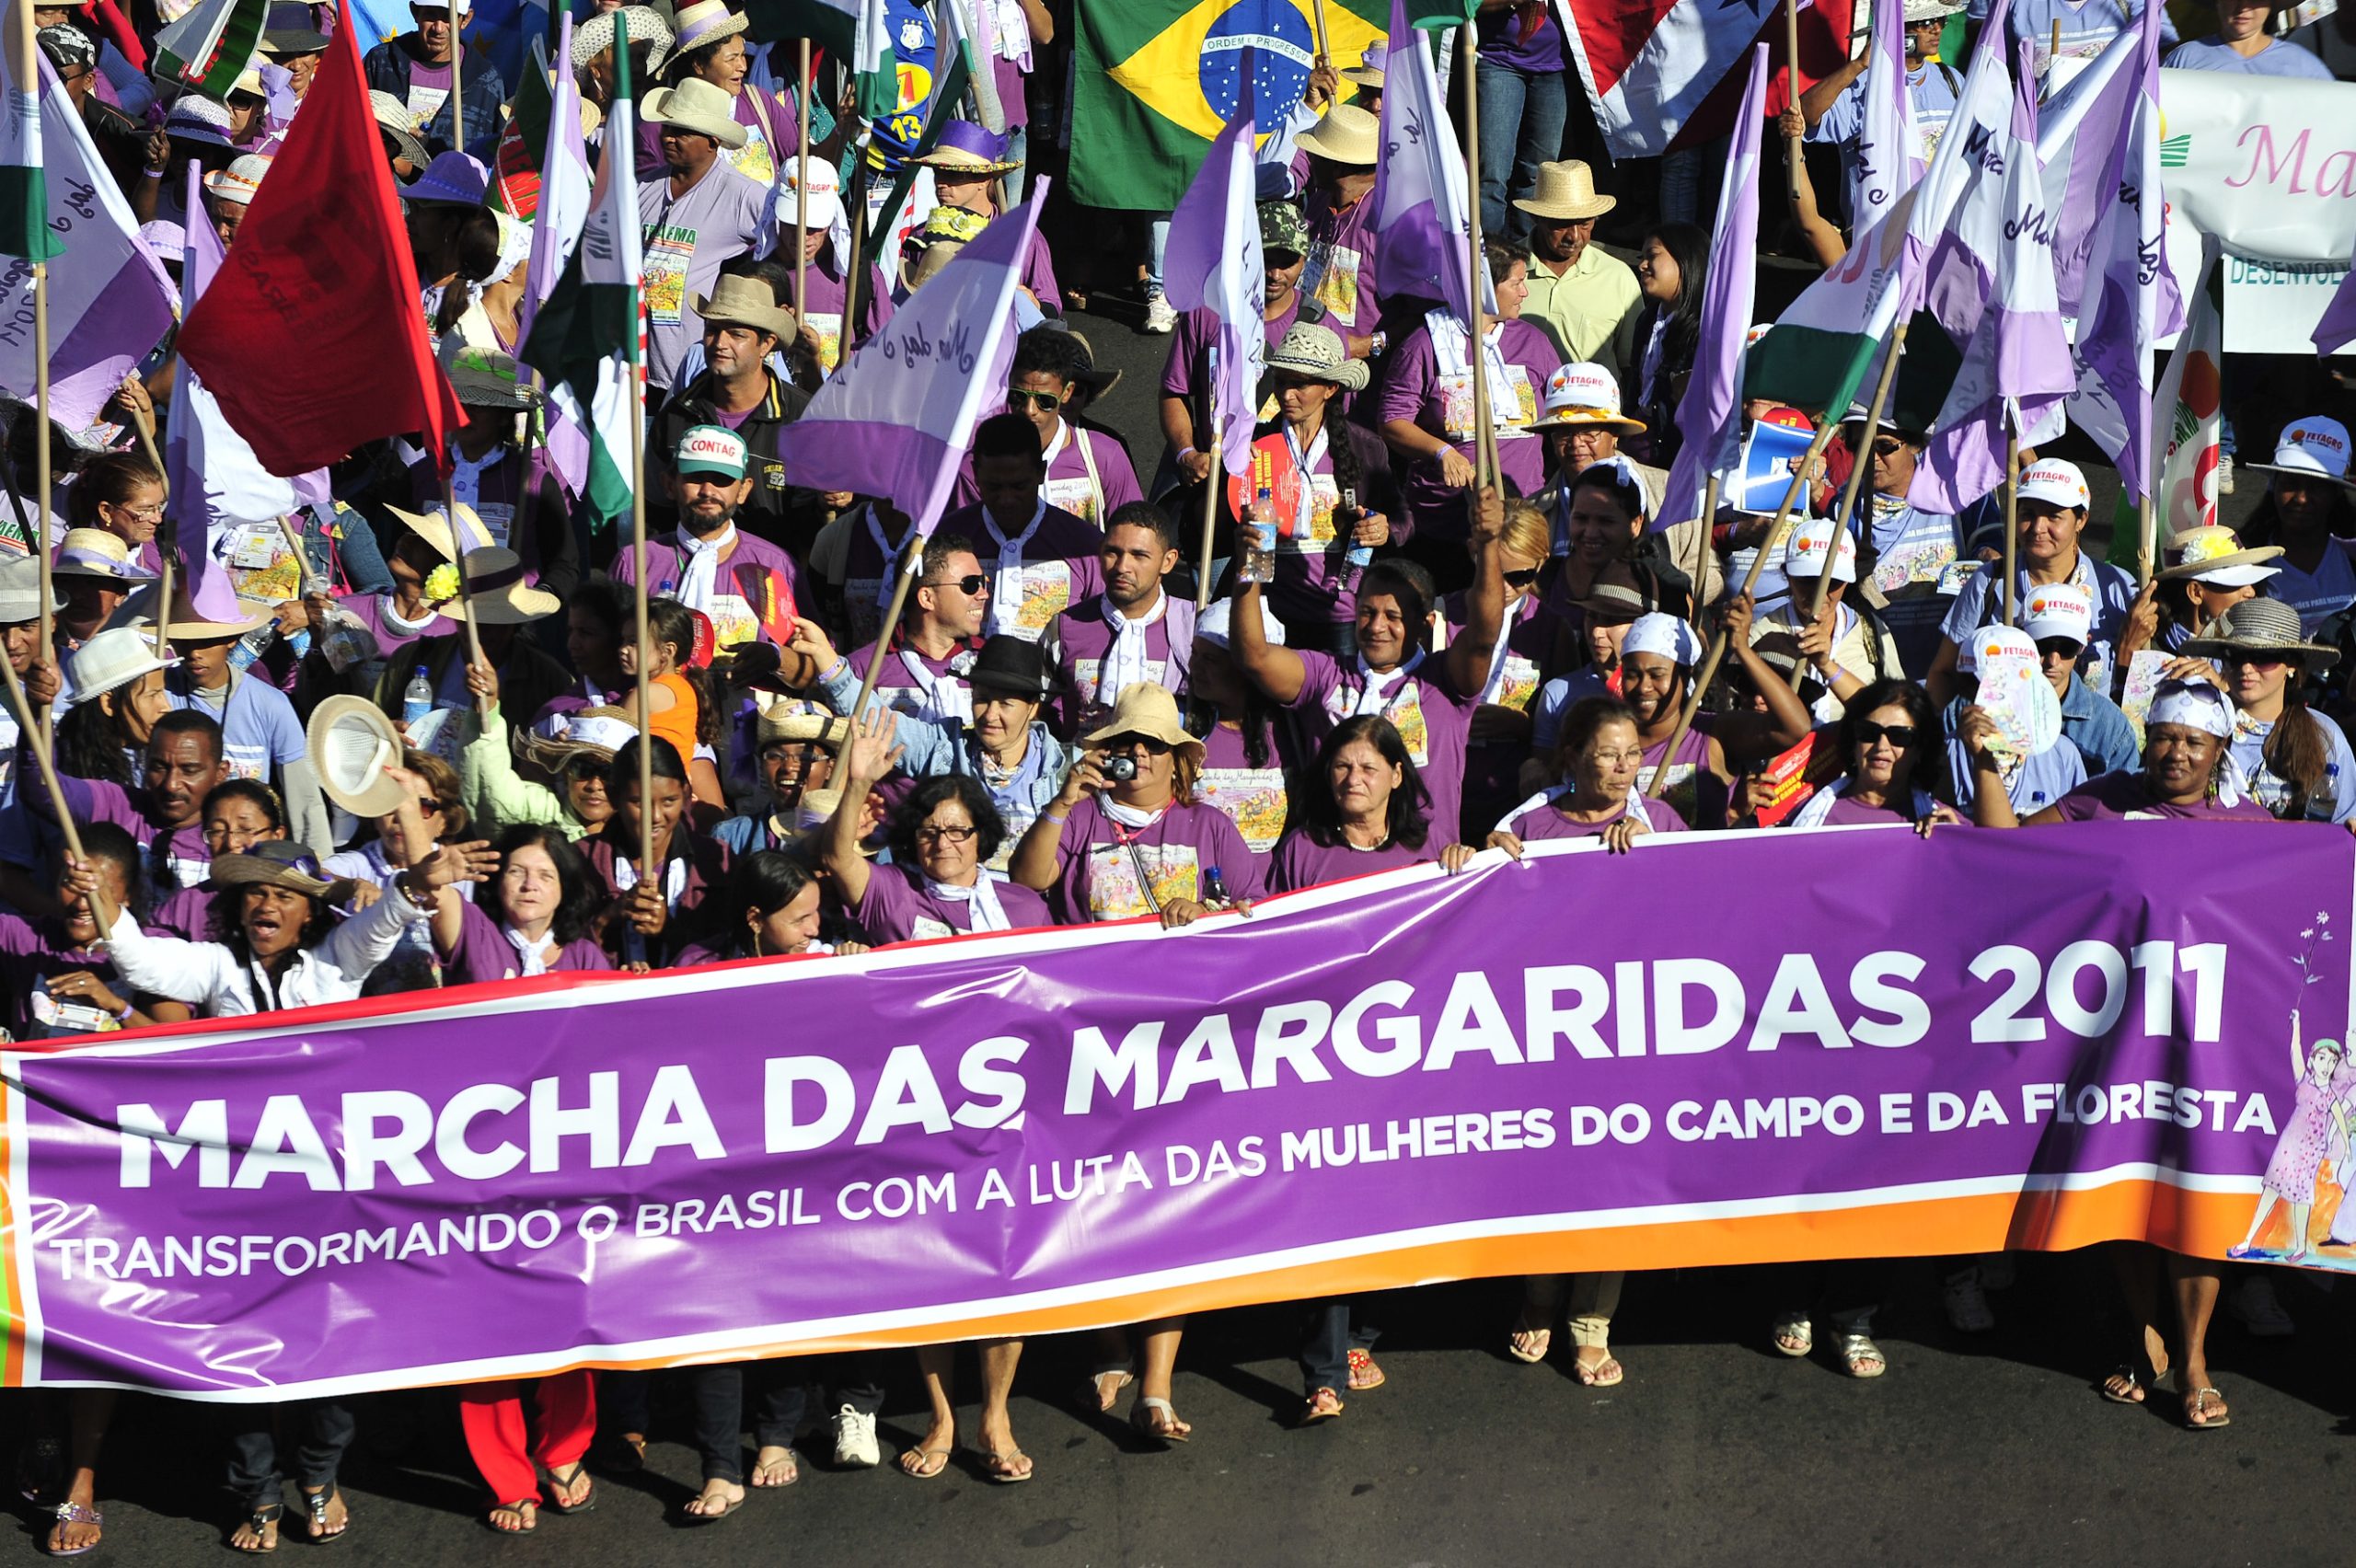 Marcha das Margaridas: demonstração da mobilização das trabalhadoras rurais